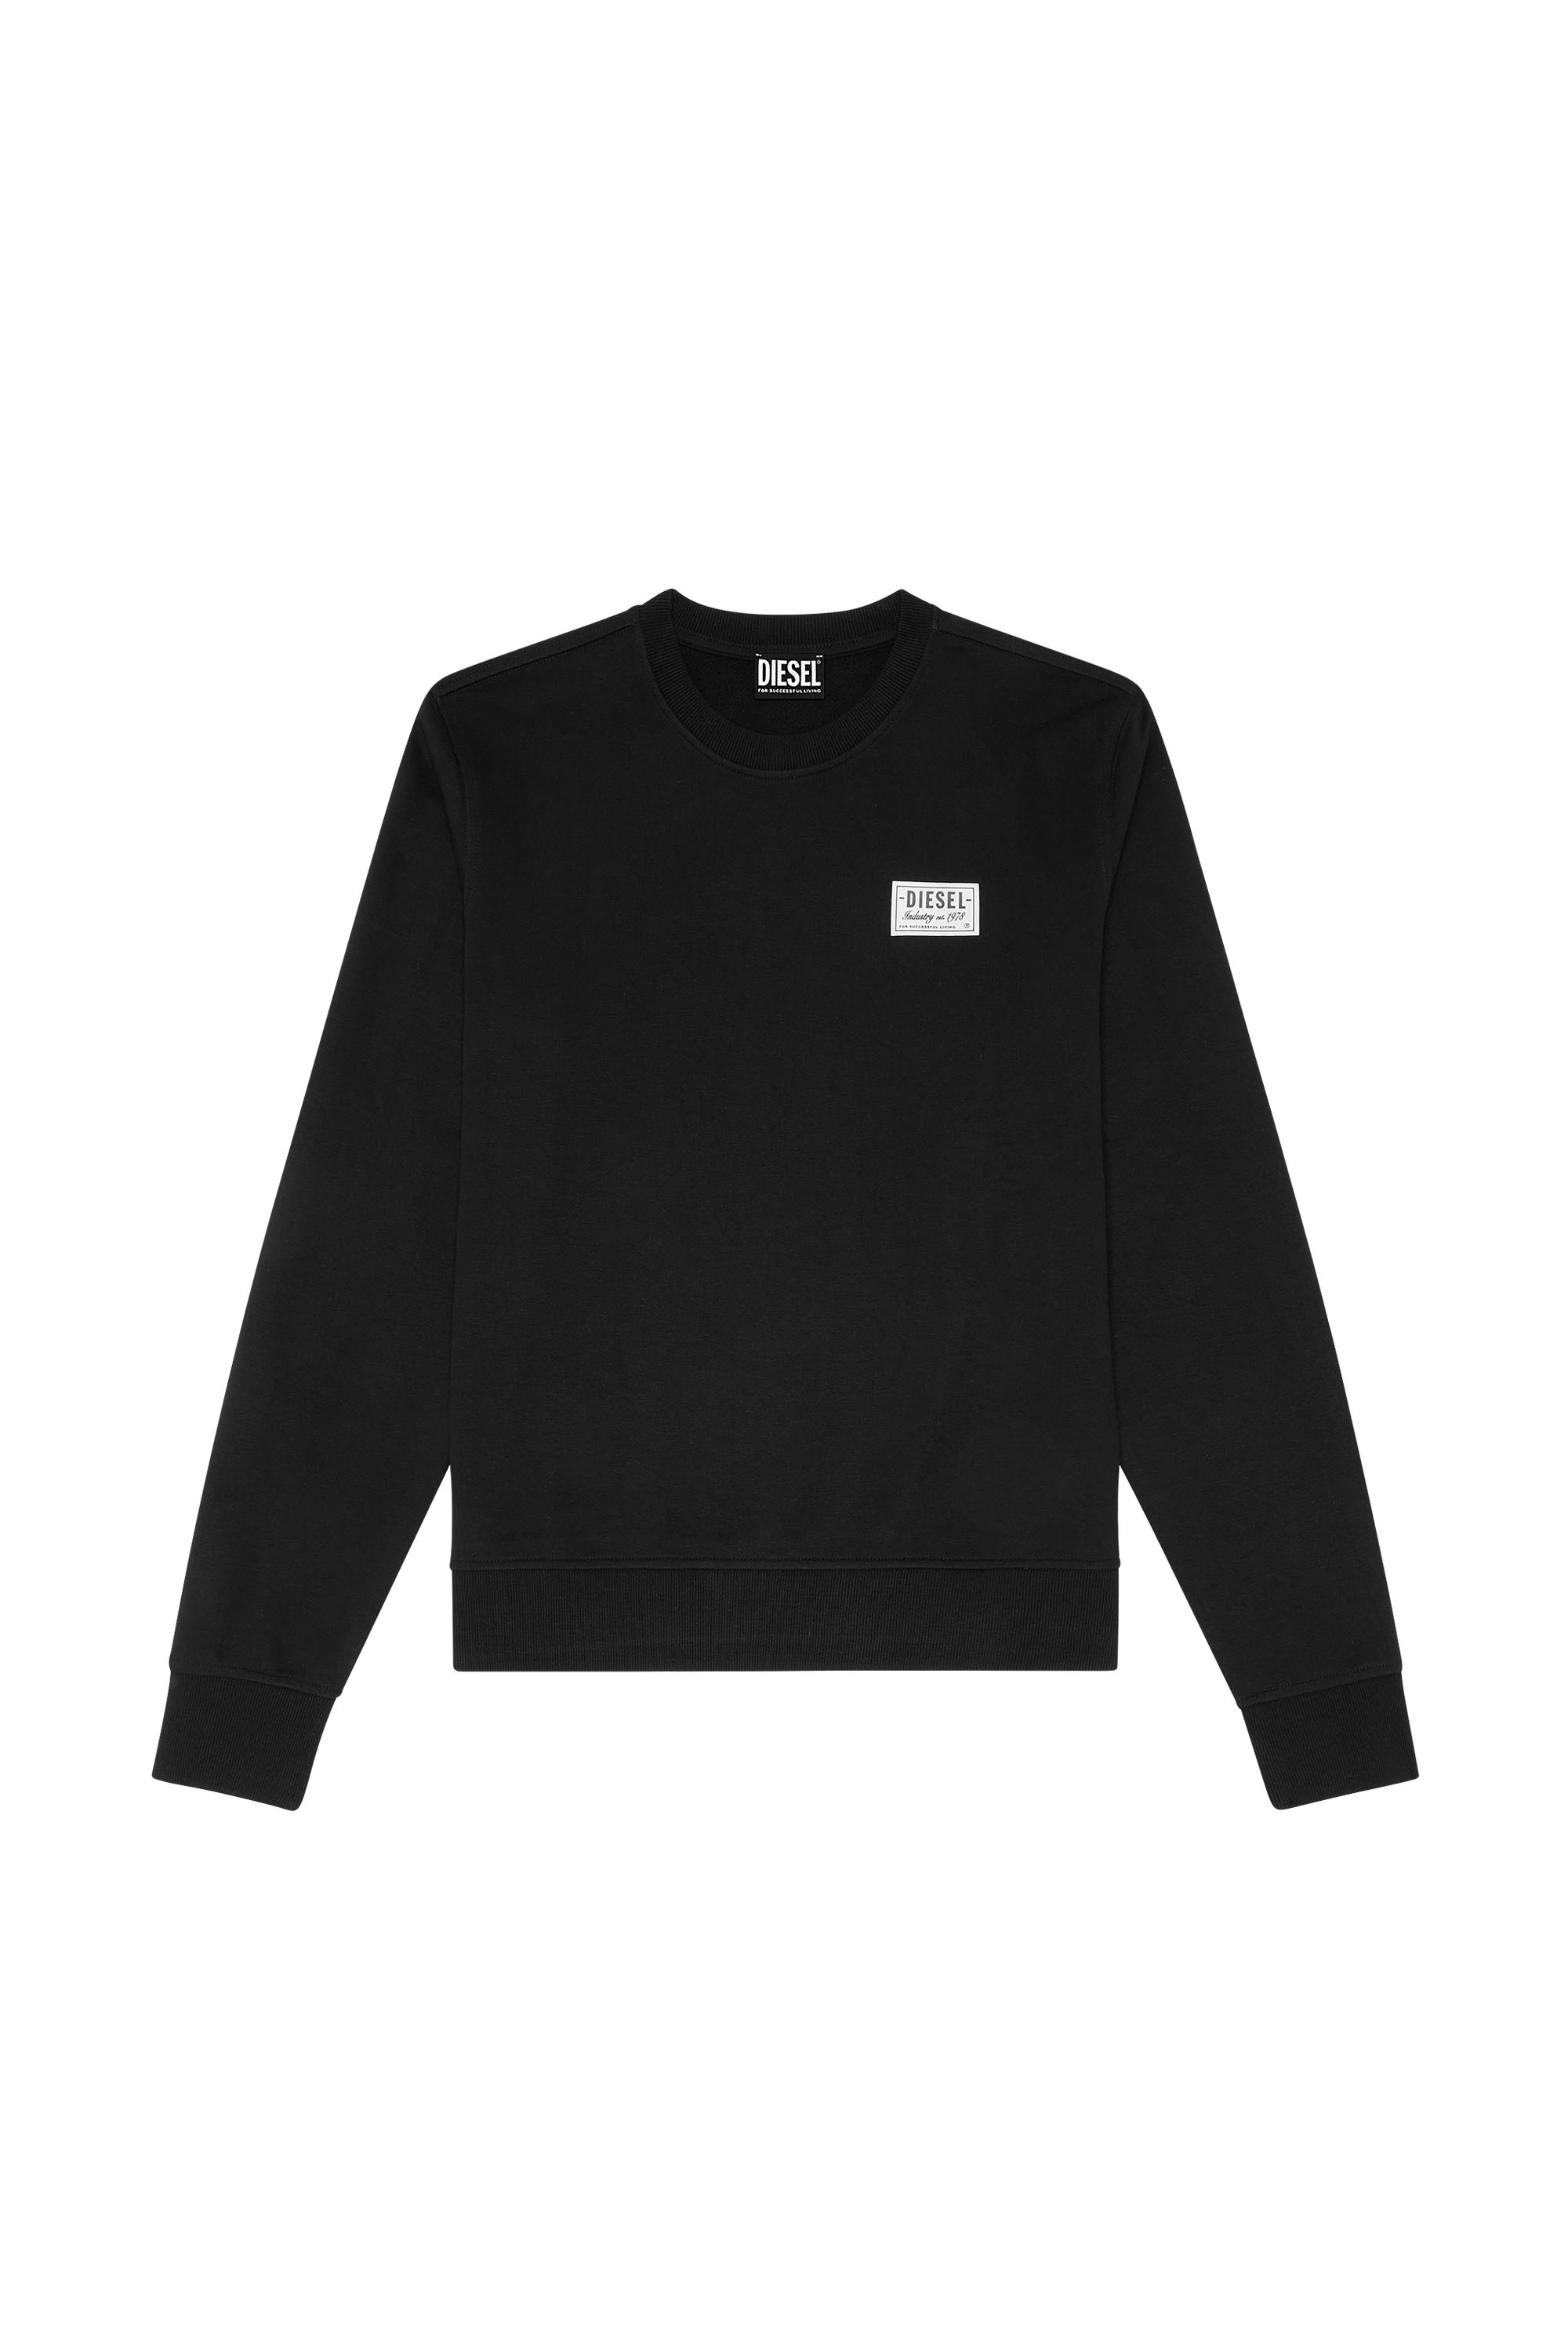 Diesel - S-GINN-SP, Man Sweatshirt with vintage logo in Black - Image 3